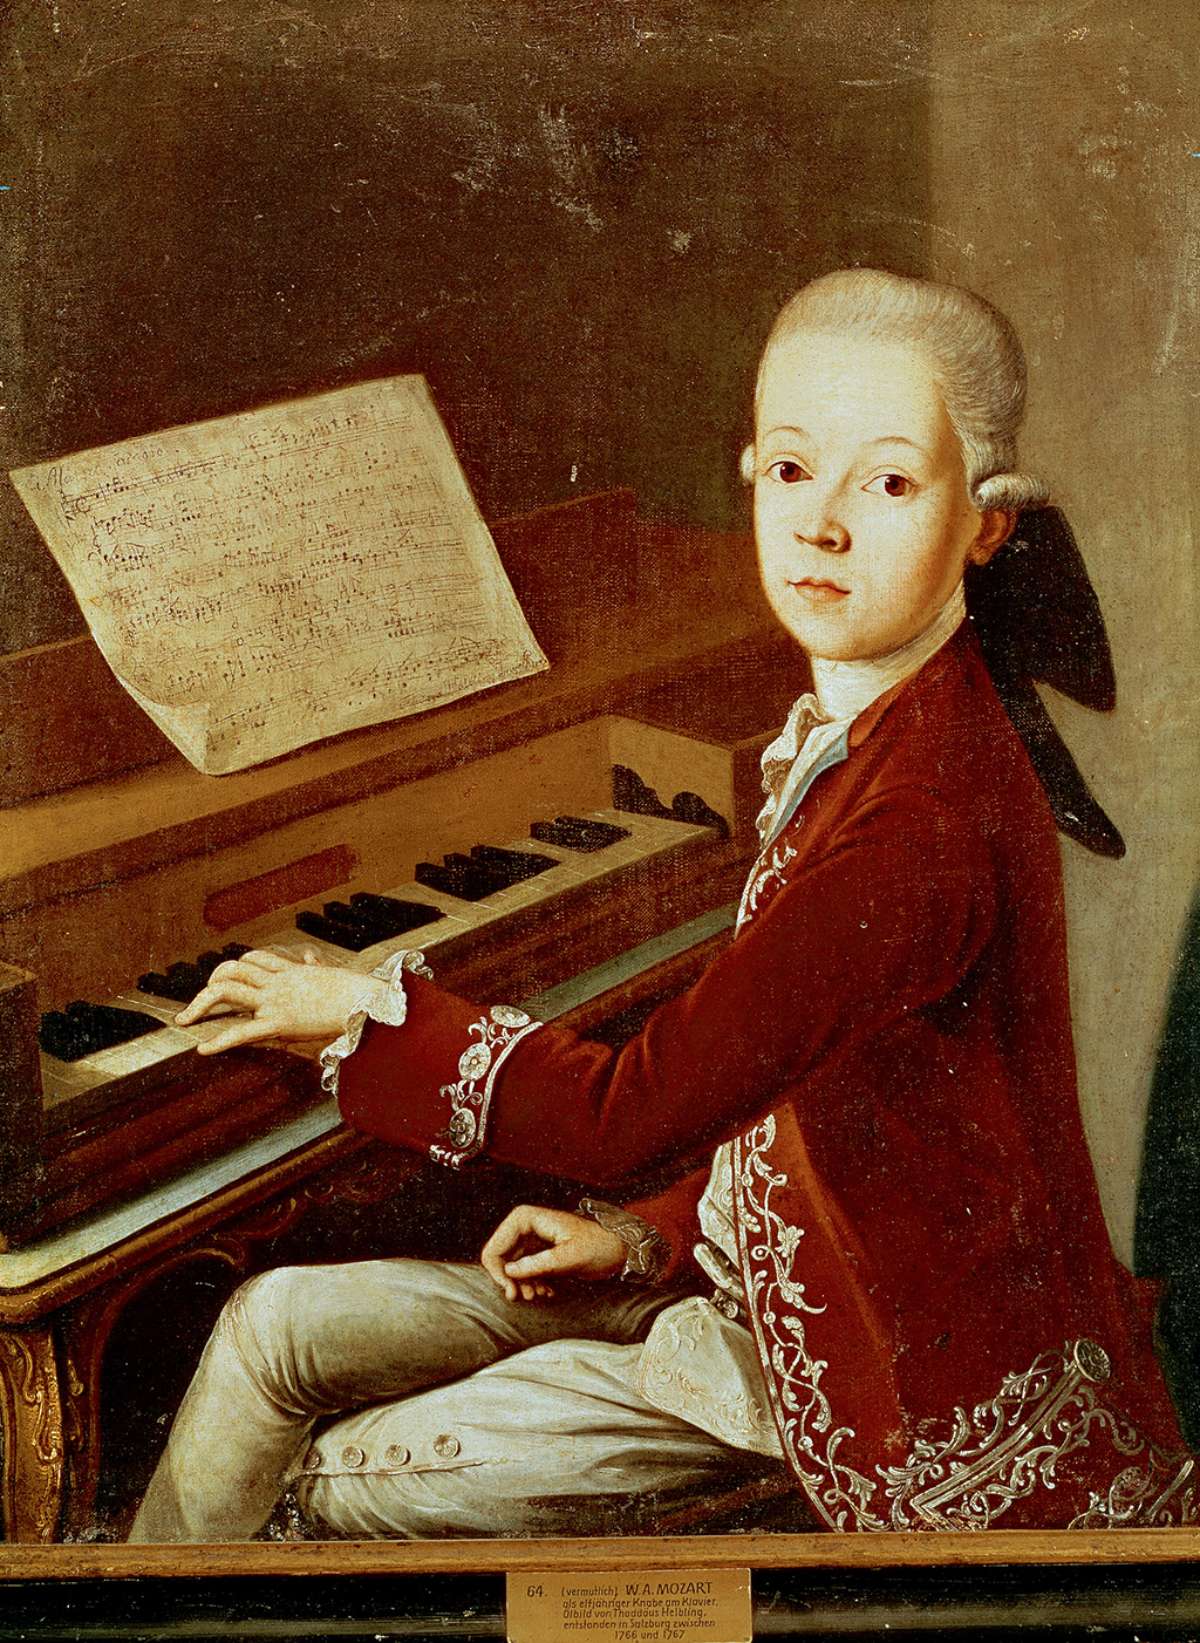 Porträt des jungen Mozart